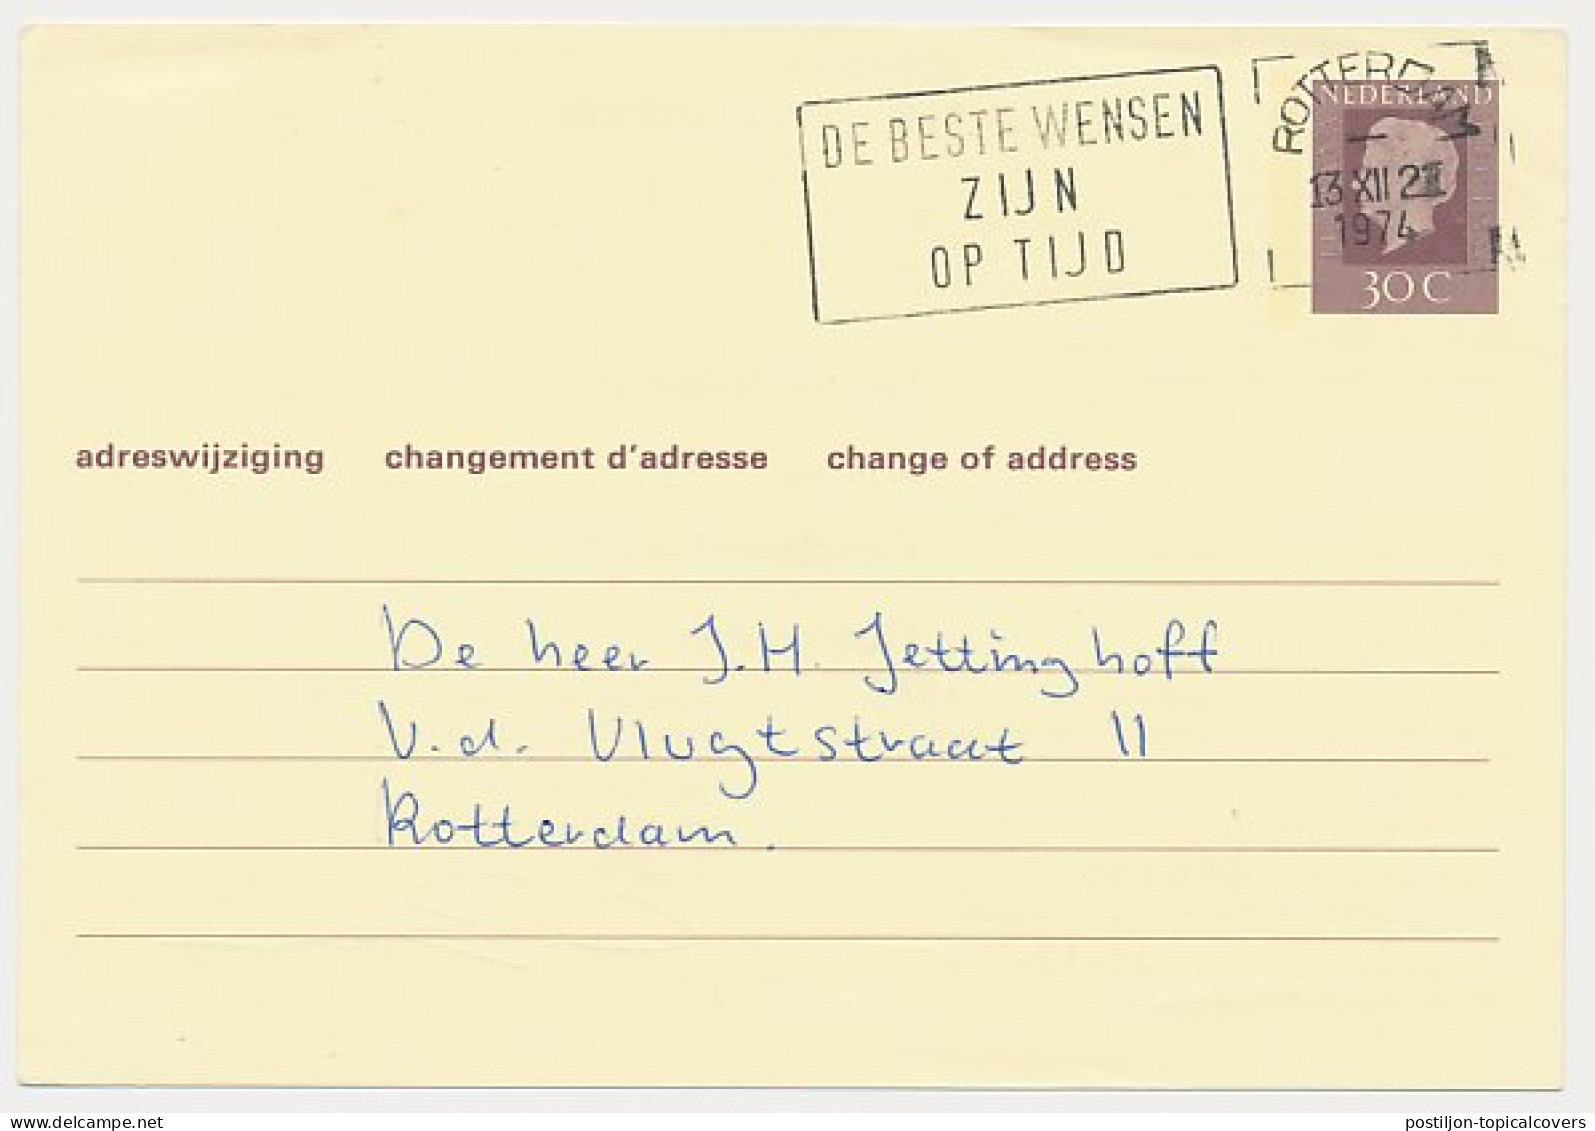 Verhuiskaart G. 39 Particulier Bedrukt Schiedam 1974 - Interi Postali